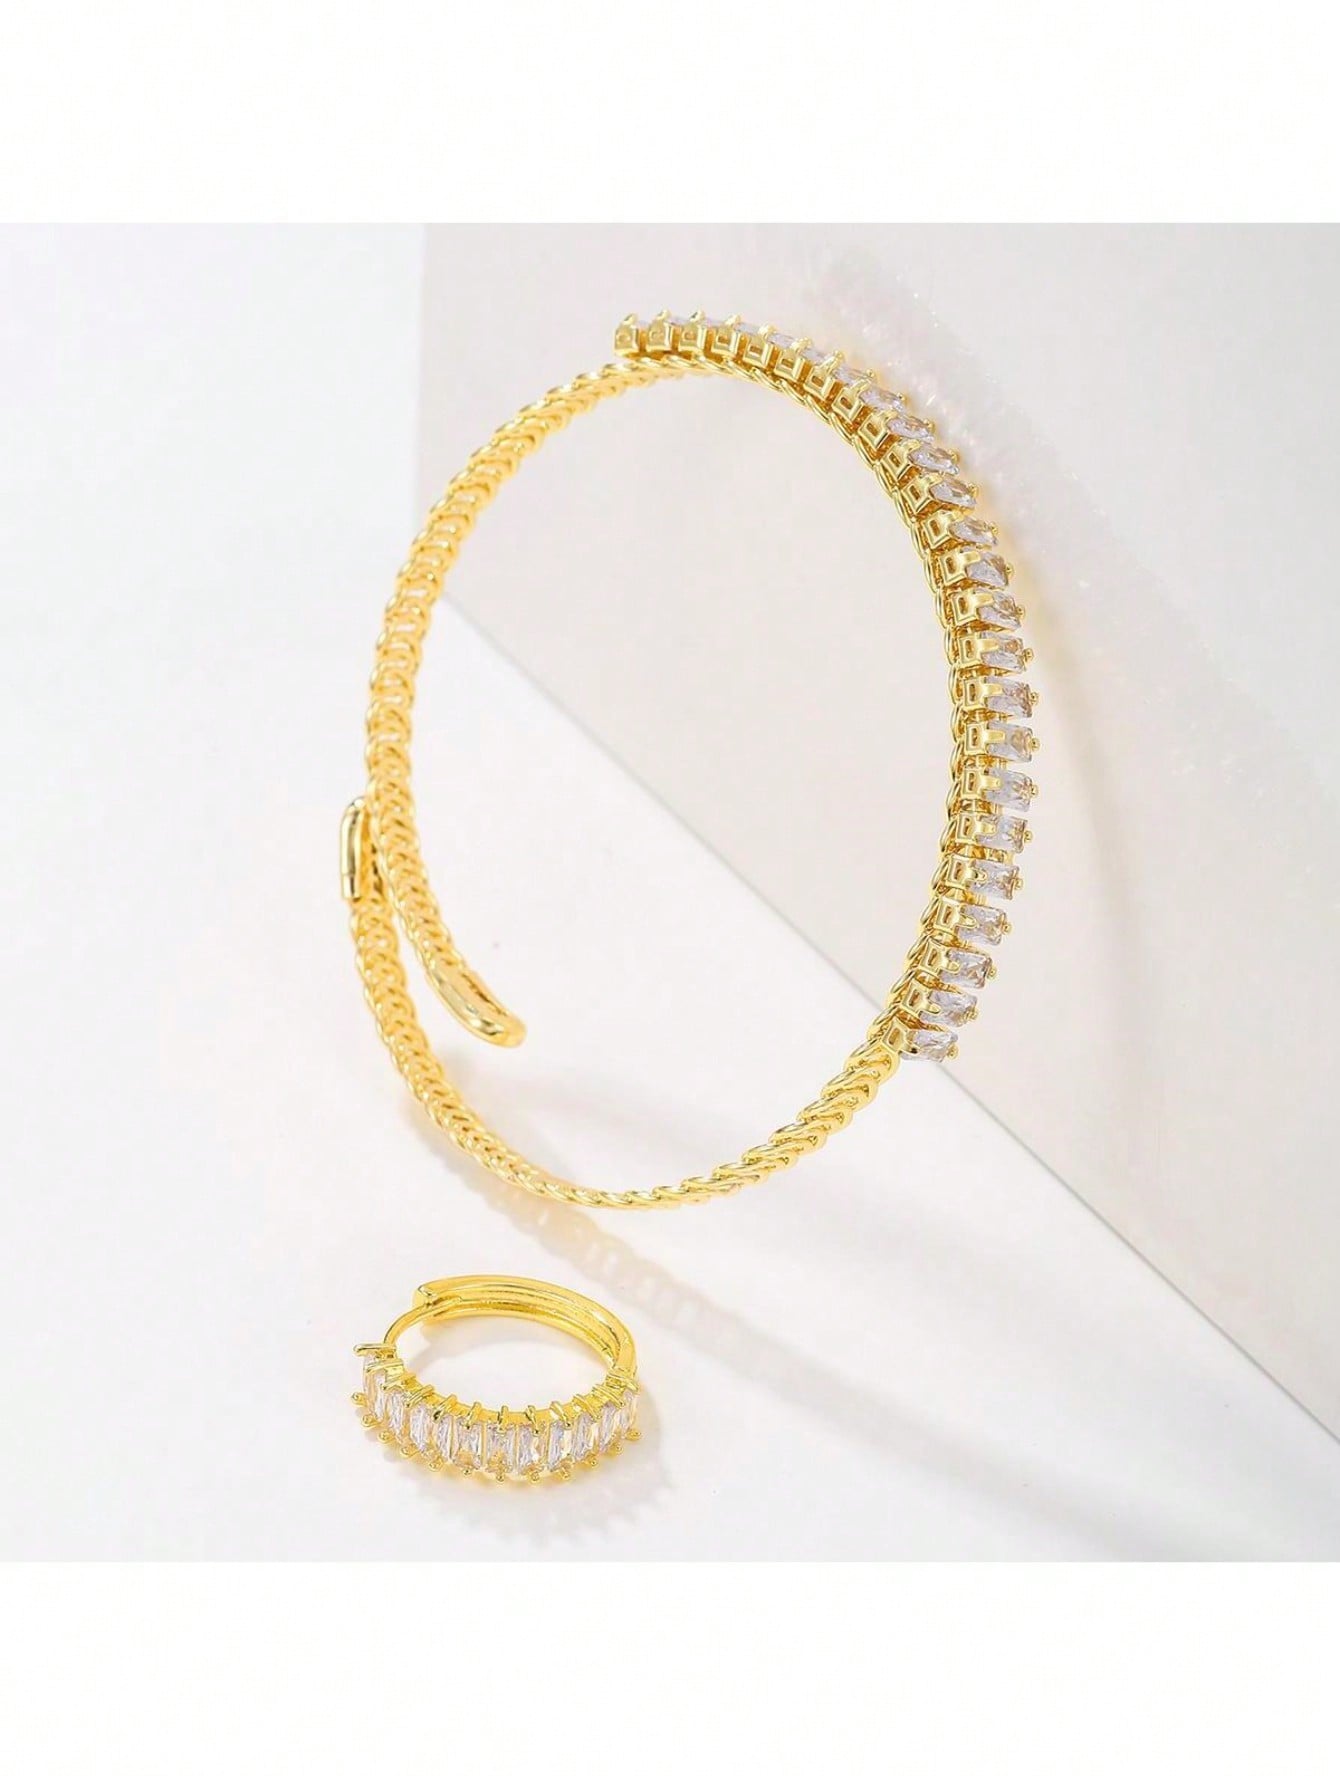 Pulseras plateadas oro de los anillos del Zircon 18K del embutido del revestimiento de acero inoxidable del color sólido brillante del estilo simple